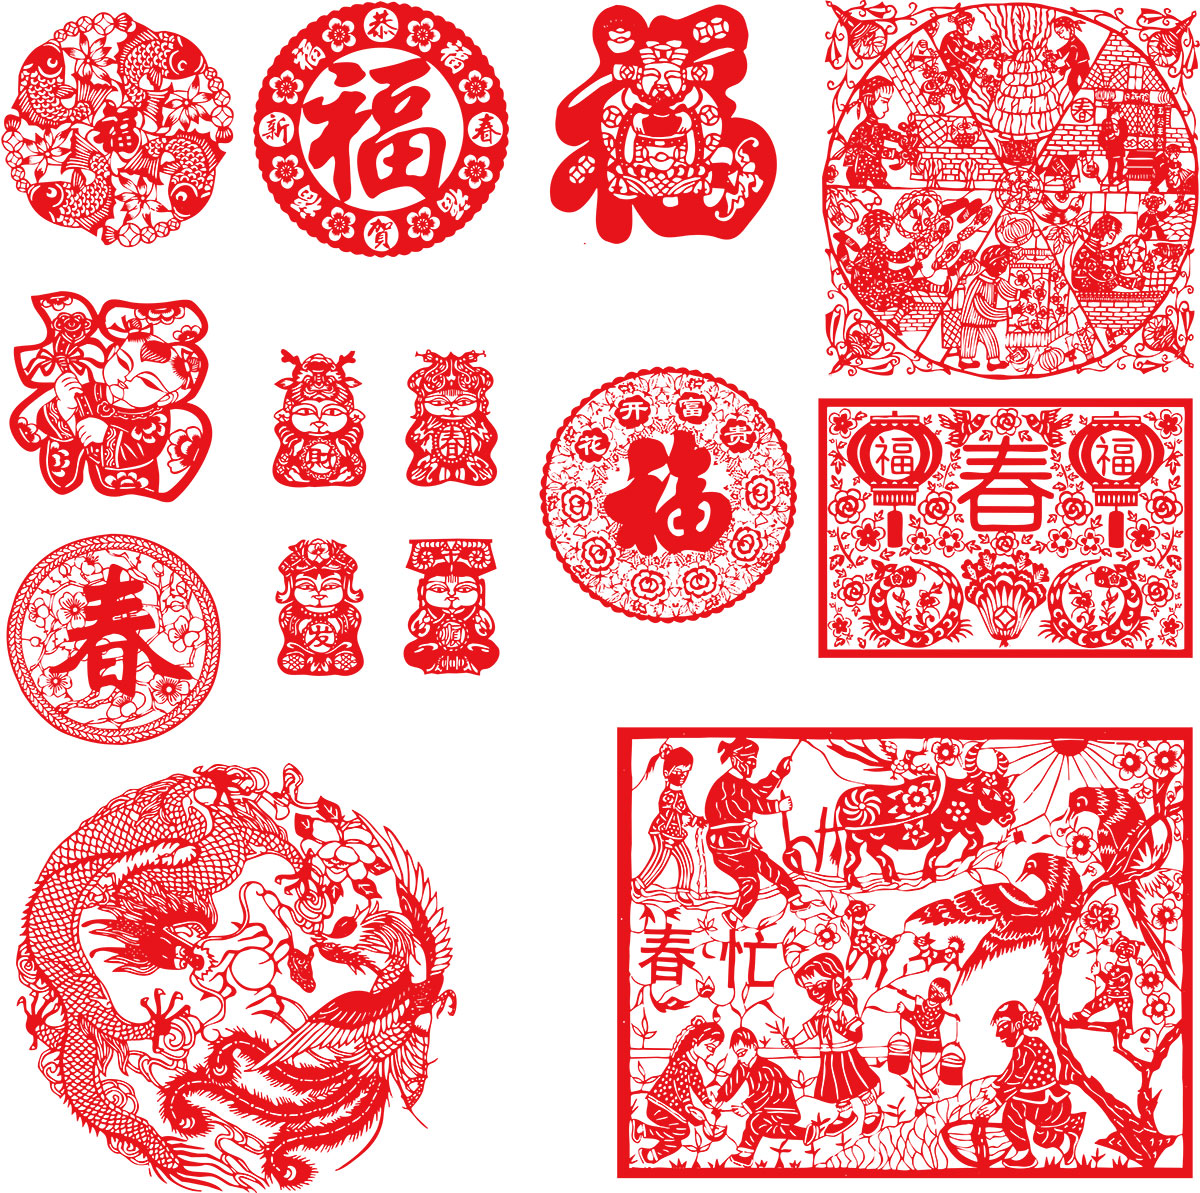 الصينية فن قص الورق المتجهات